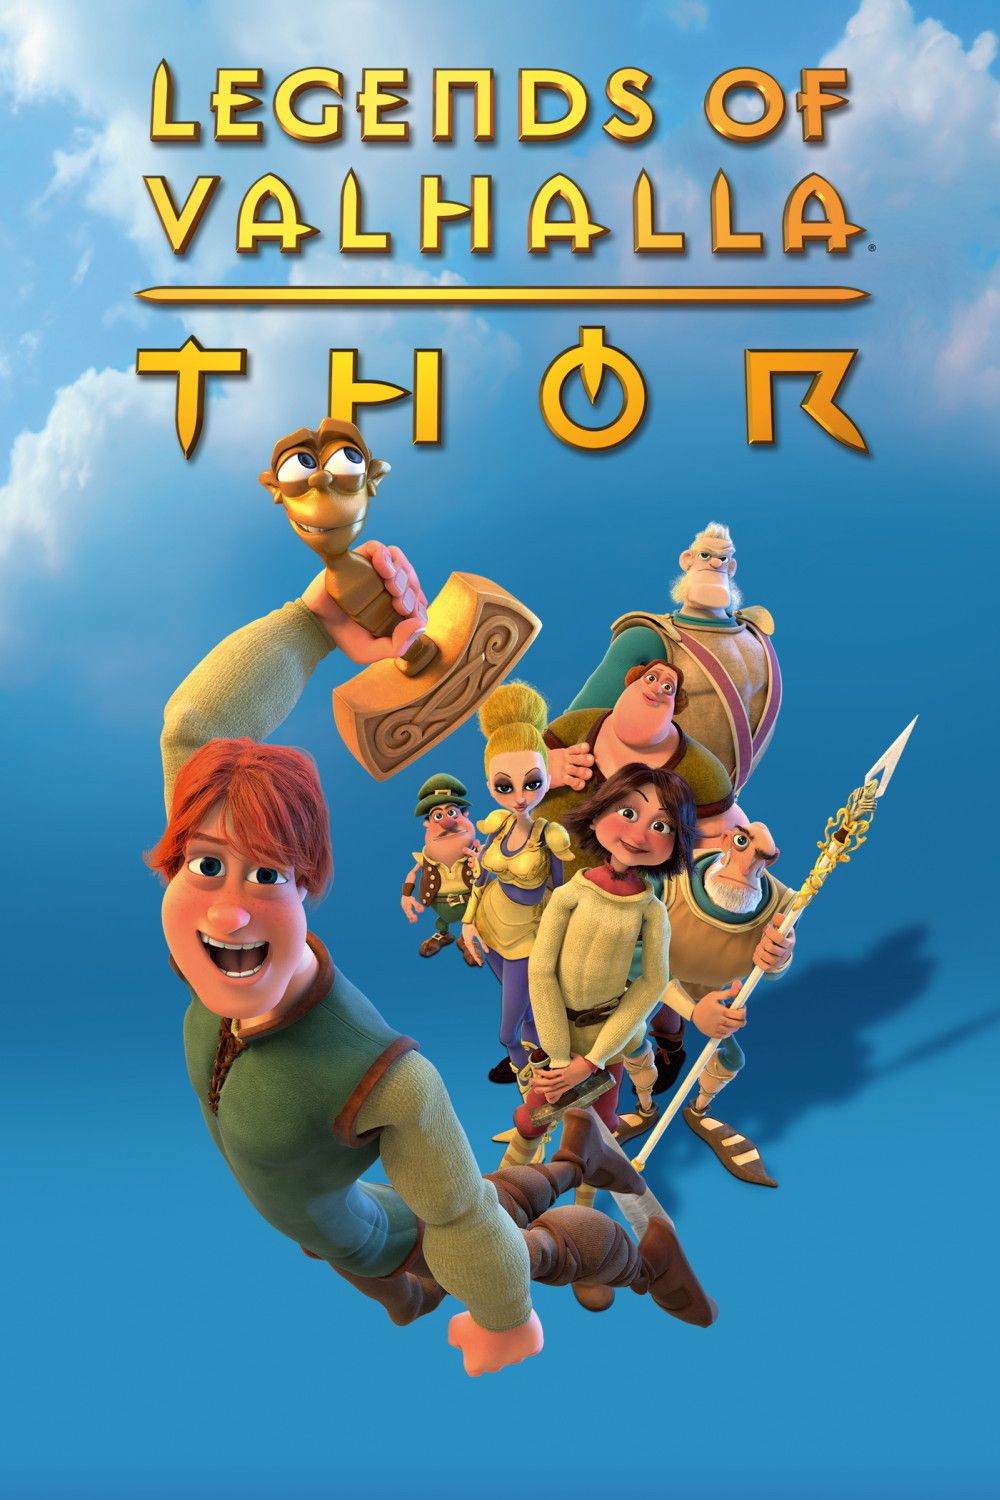 Thor et les légendes du Valhalla - Film (2011) streaming VF gratuit complet